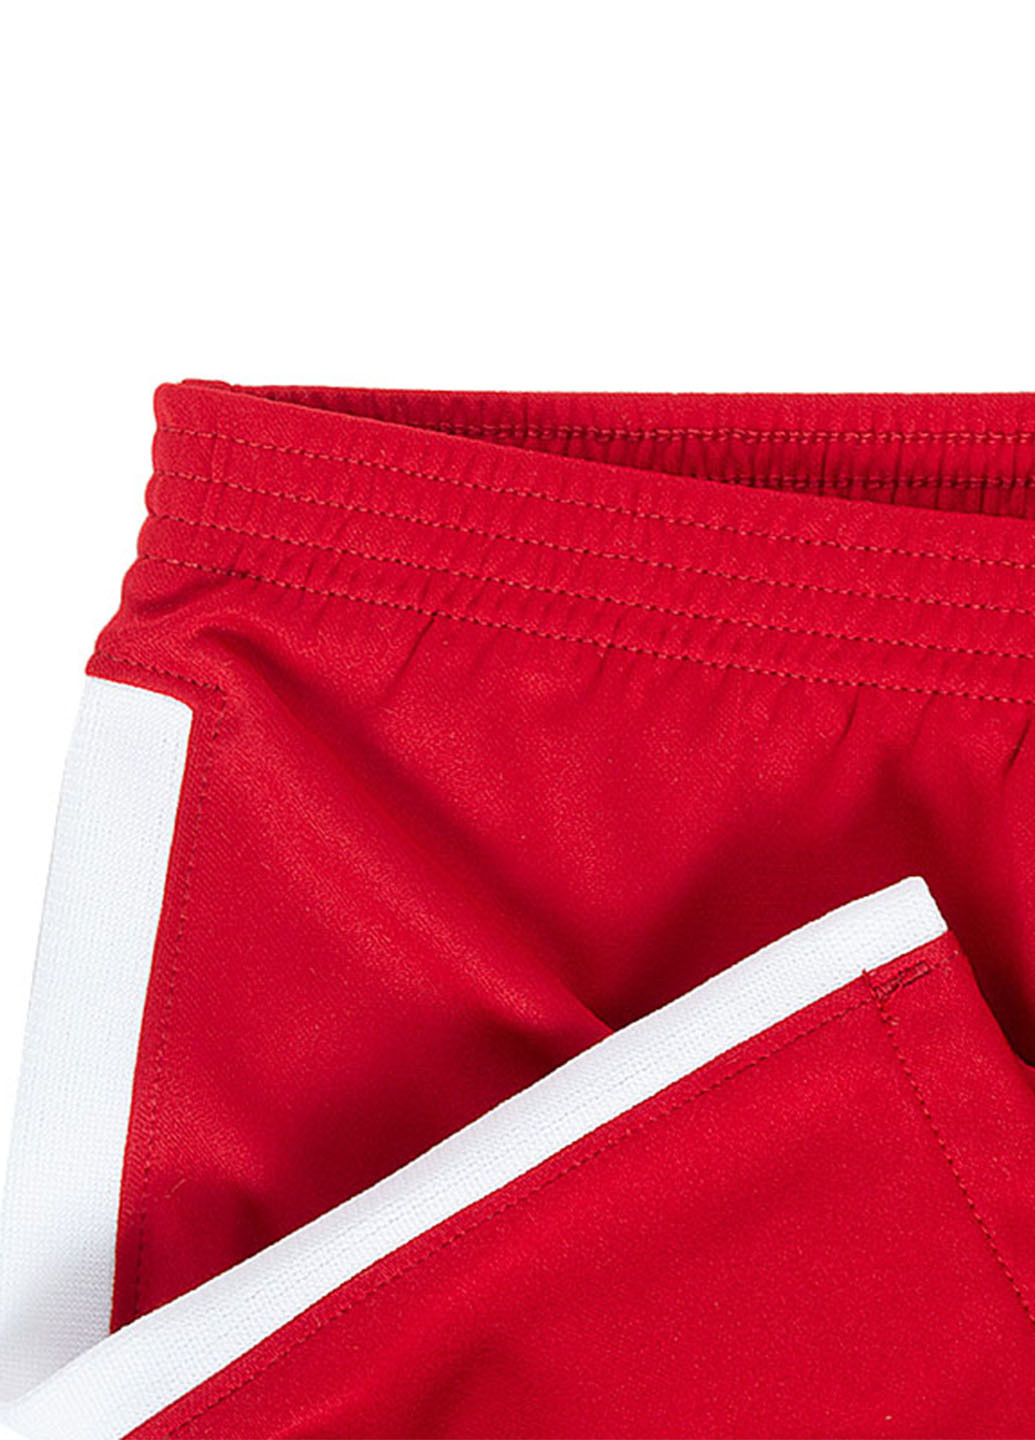 Червоний демісезонний костюм (футболка, шорти, гетри) Nike Lfc Lk Nk Brt Kit Aw